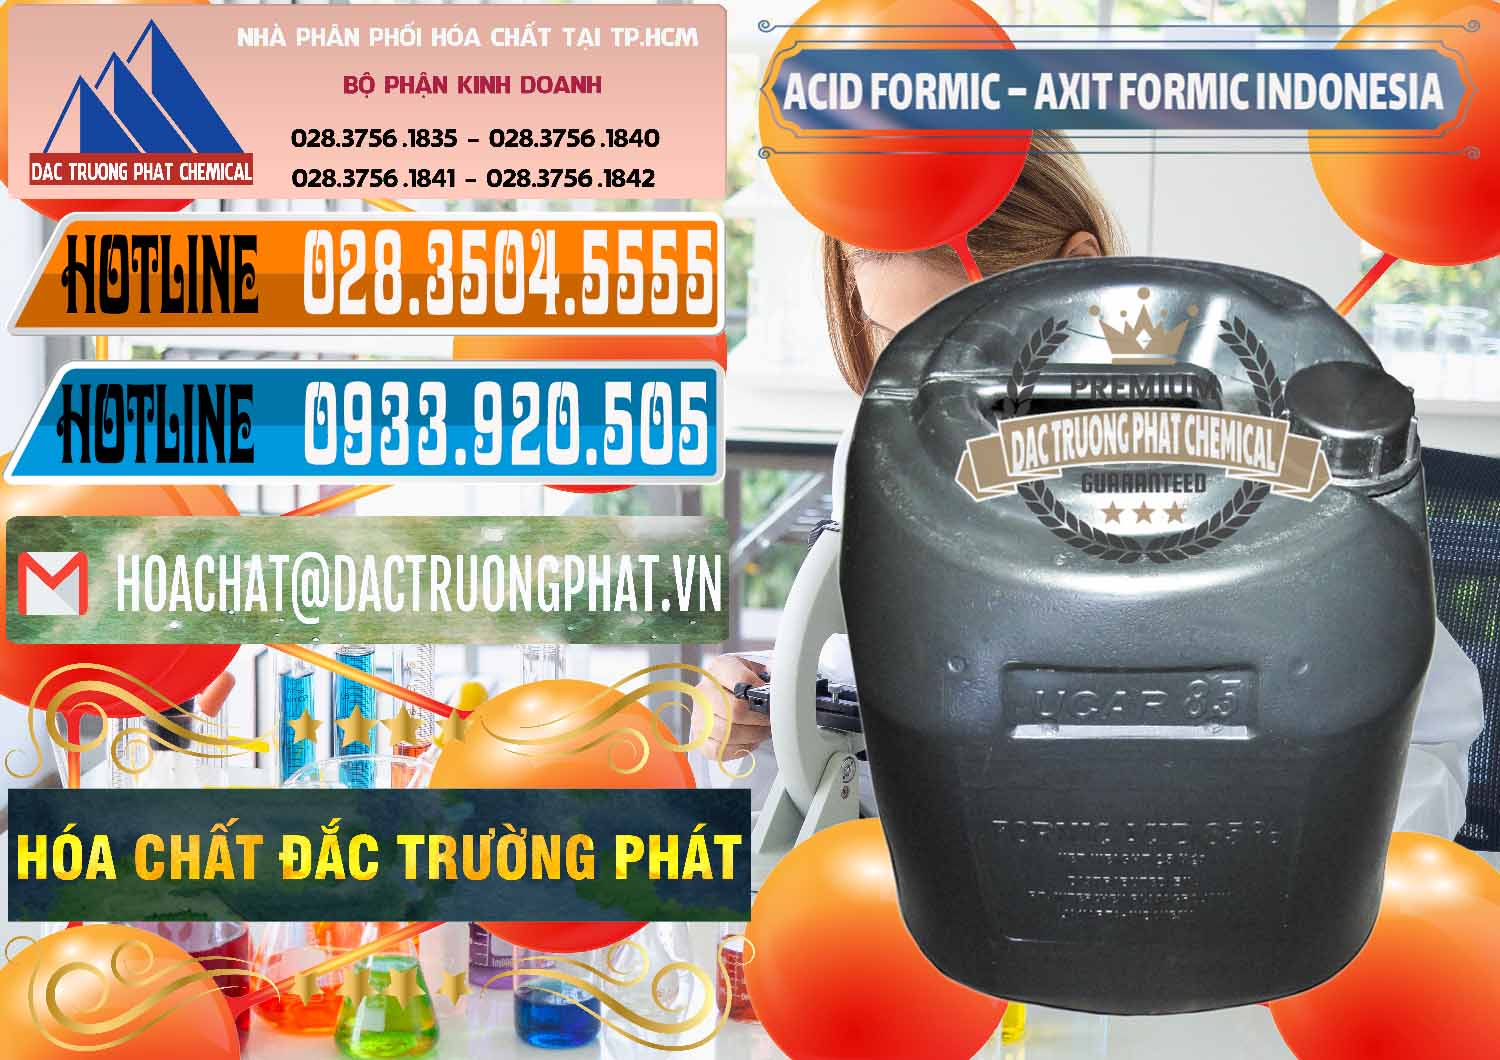 Nhà cung cấp và bán Acid Formic - Axit Formic Indonesia - 0026 - Nơi chuyên kinh doanh _ cung cấp hóa chất tại TP.HCM - stmp.net